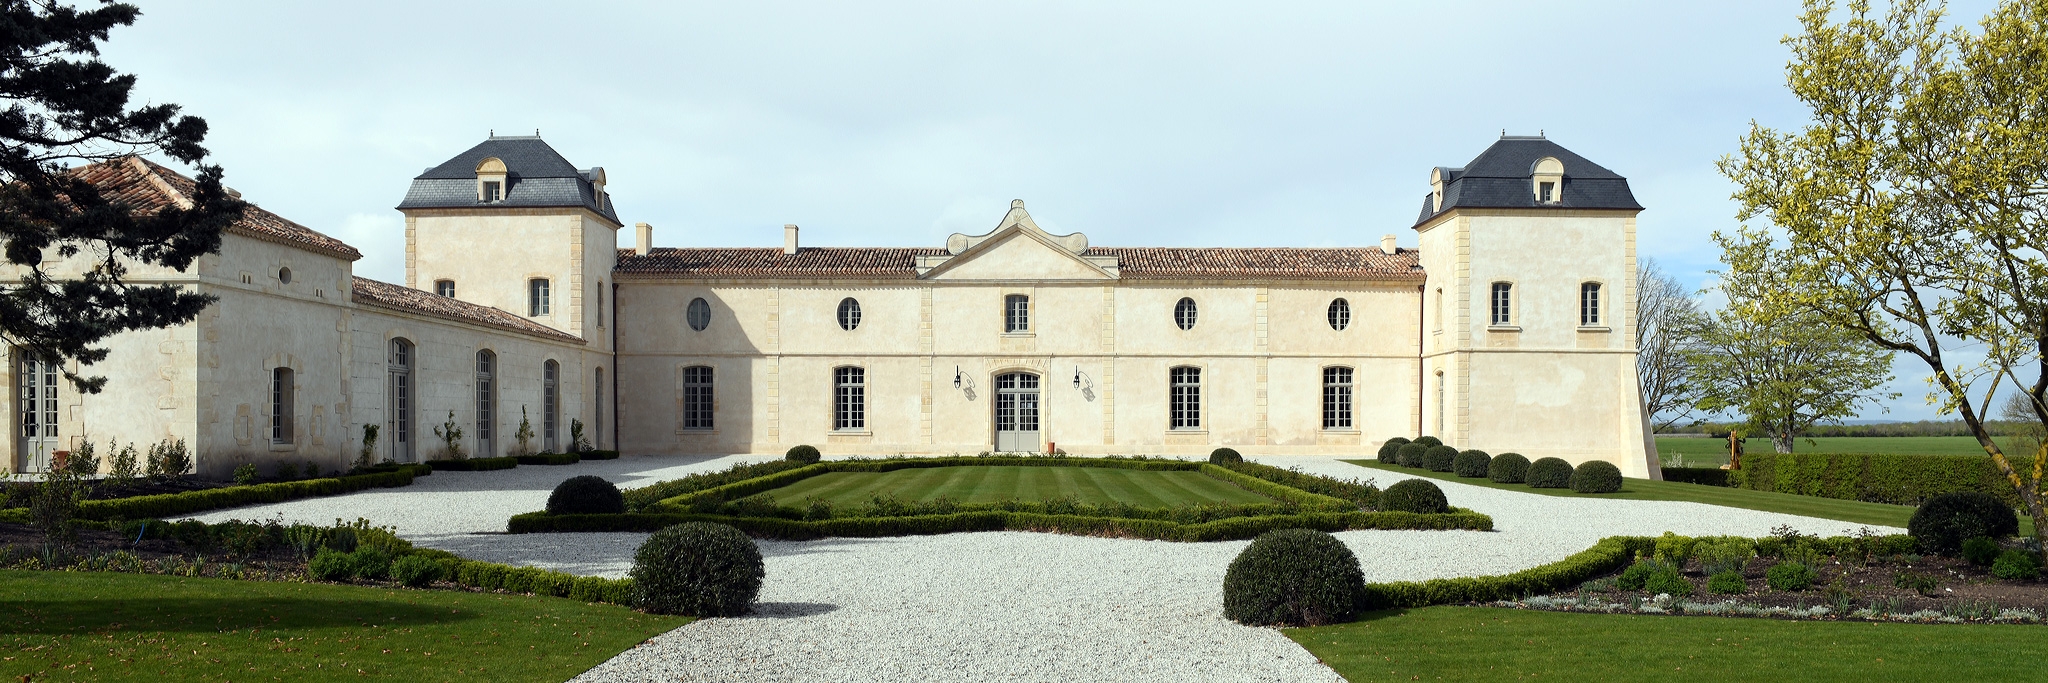 Château Calon Segur - AUX FINS GOURMETS